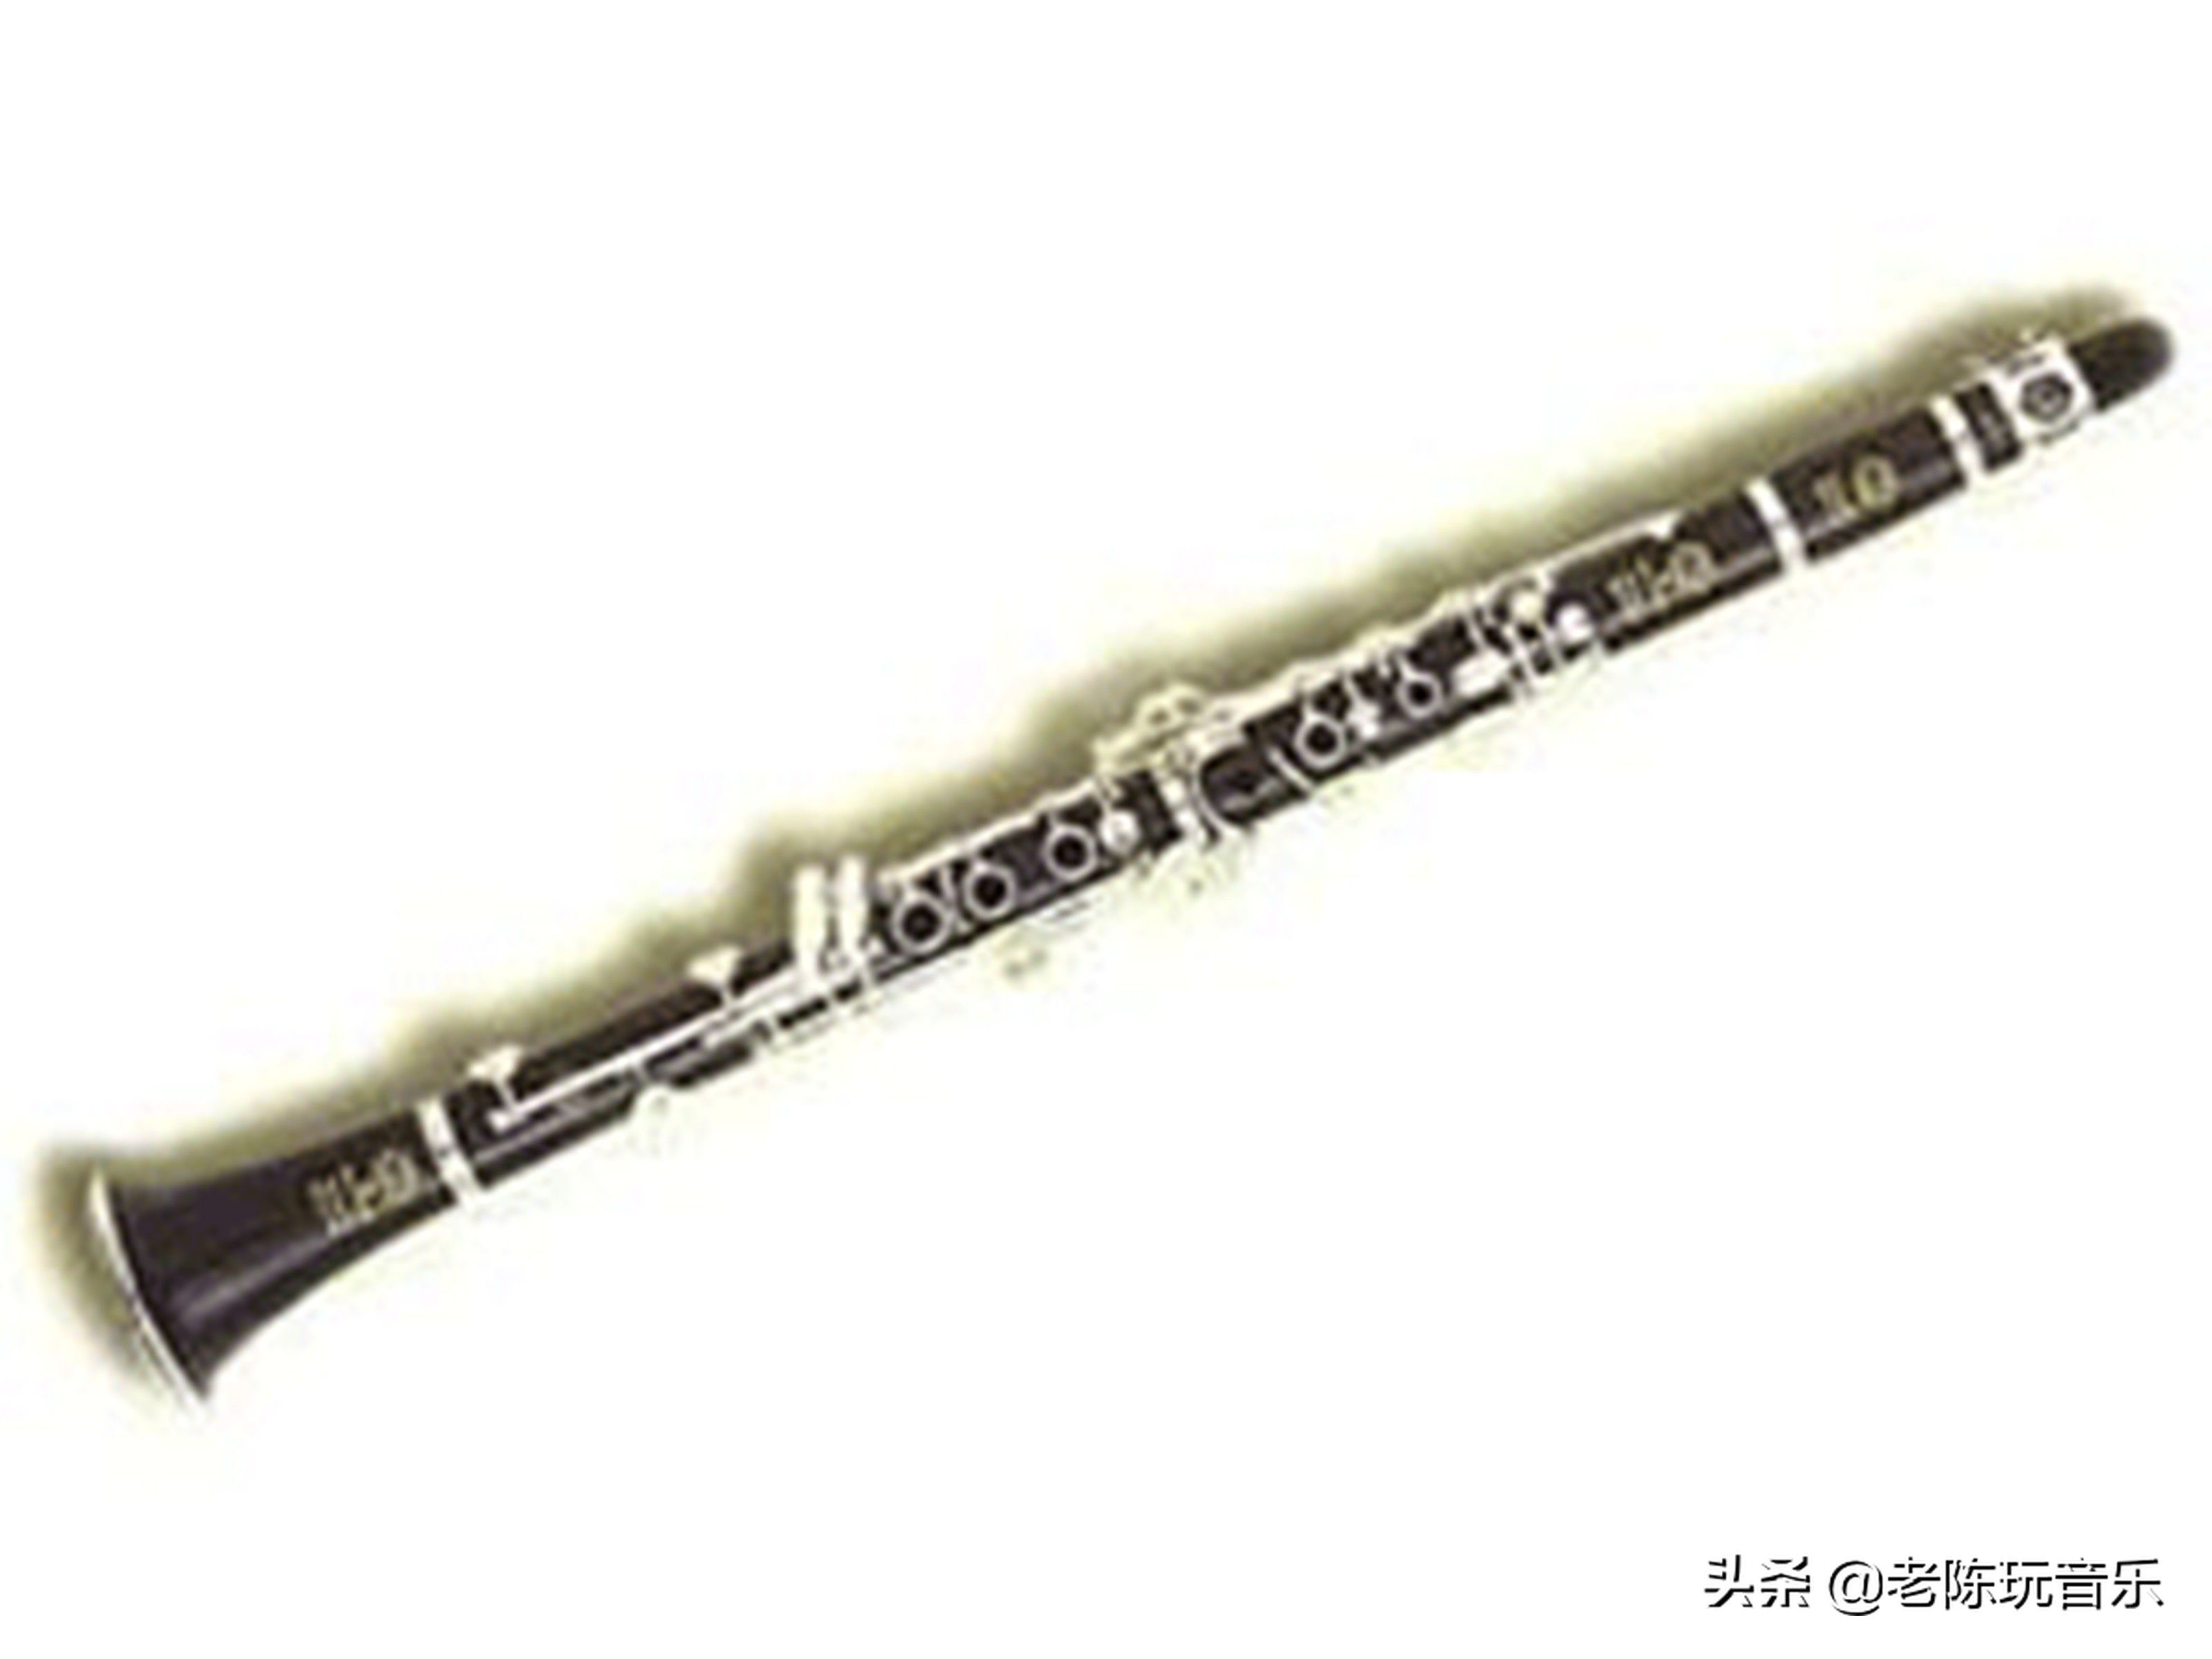 黑管,又叫单簧管或克拉管,在木管乐器中占有很重要的位置,应用非常